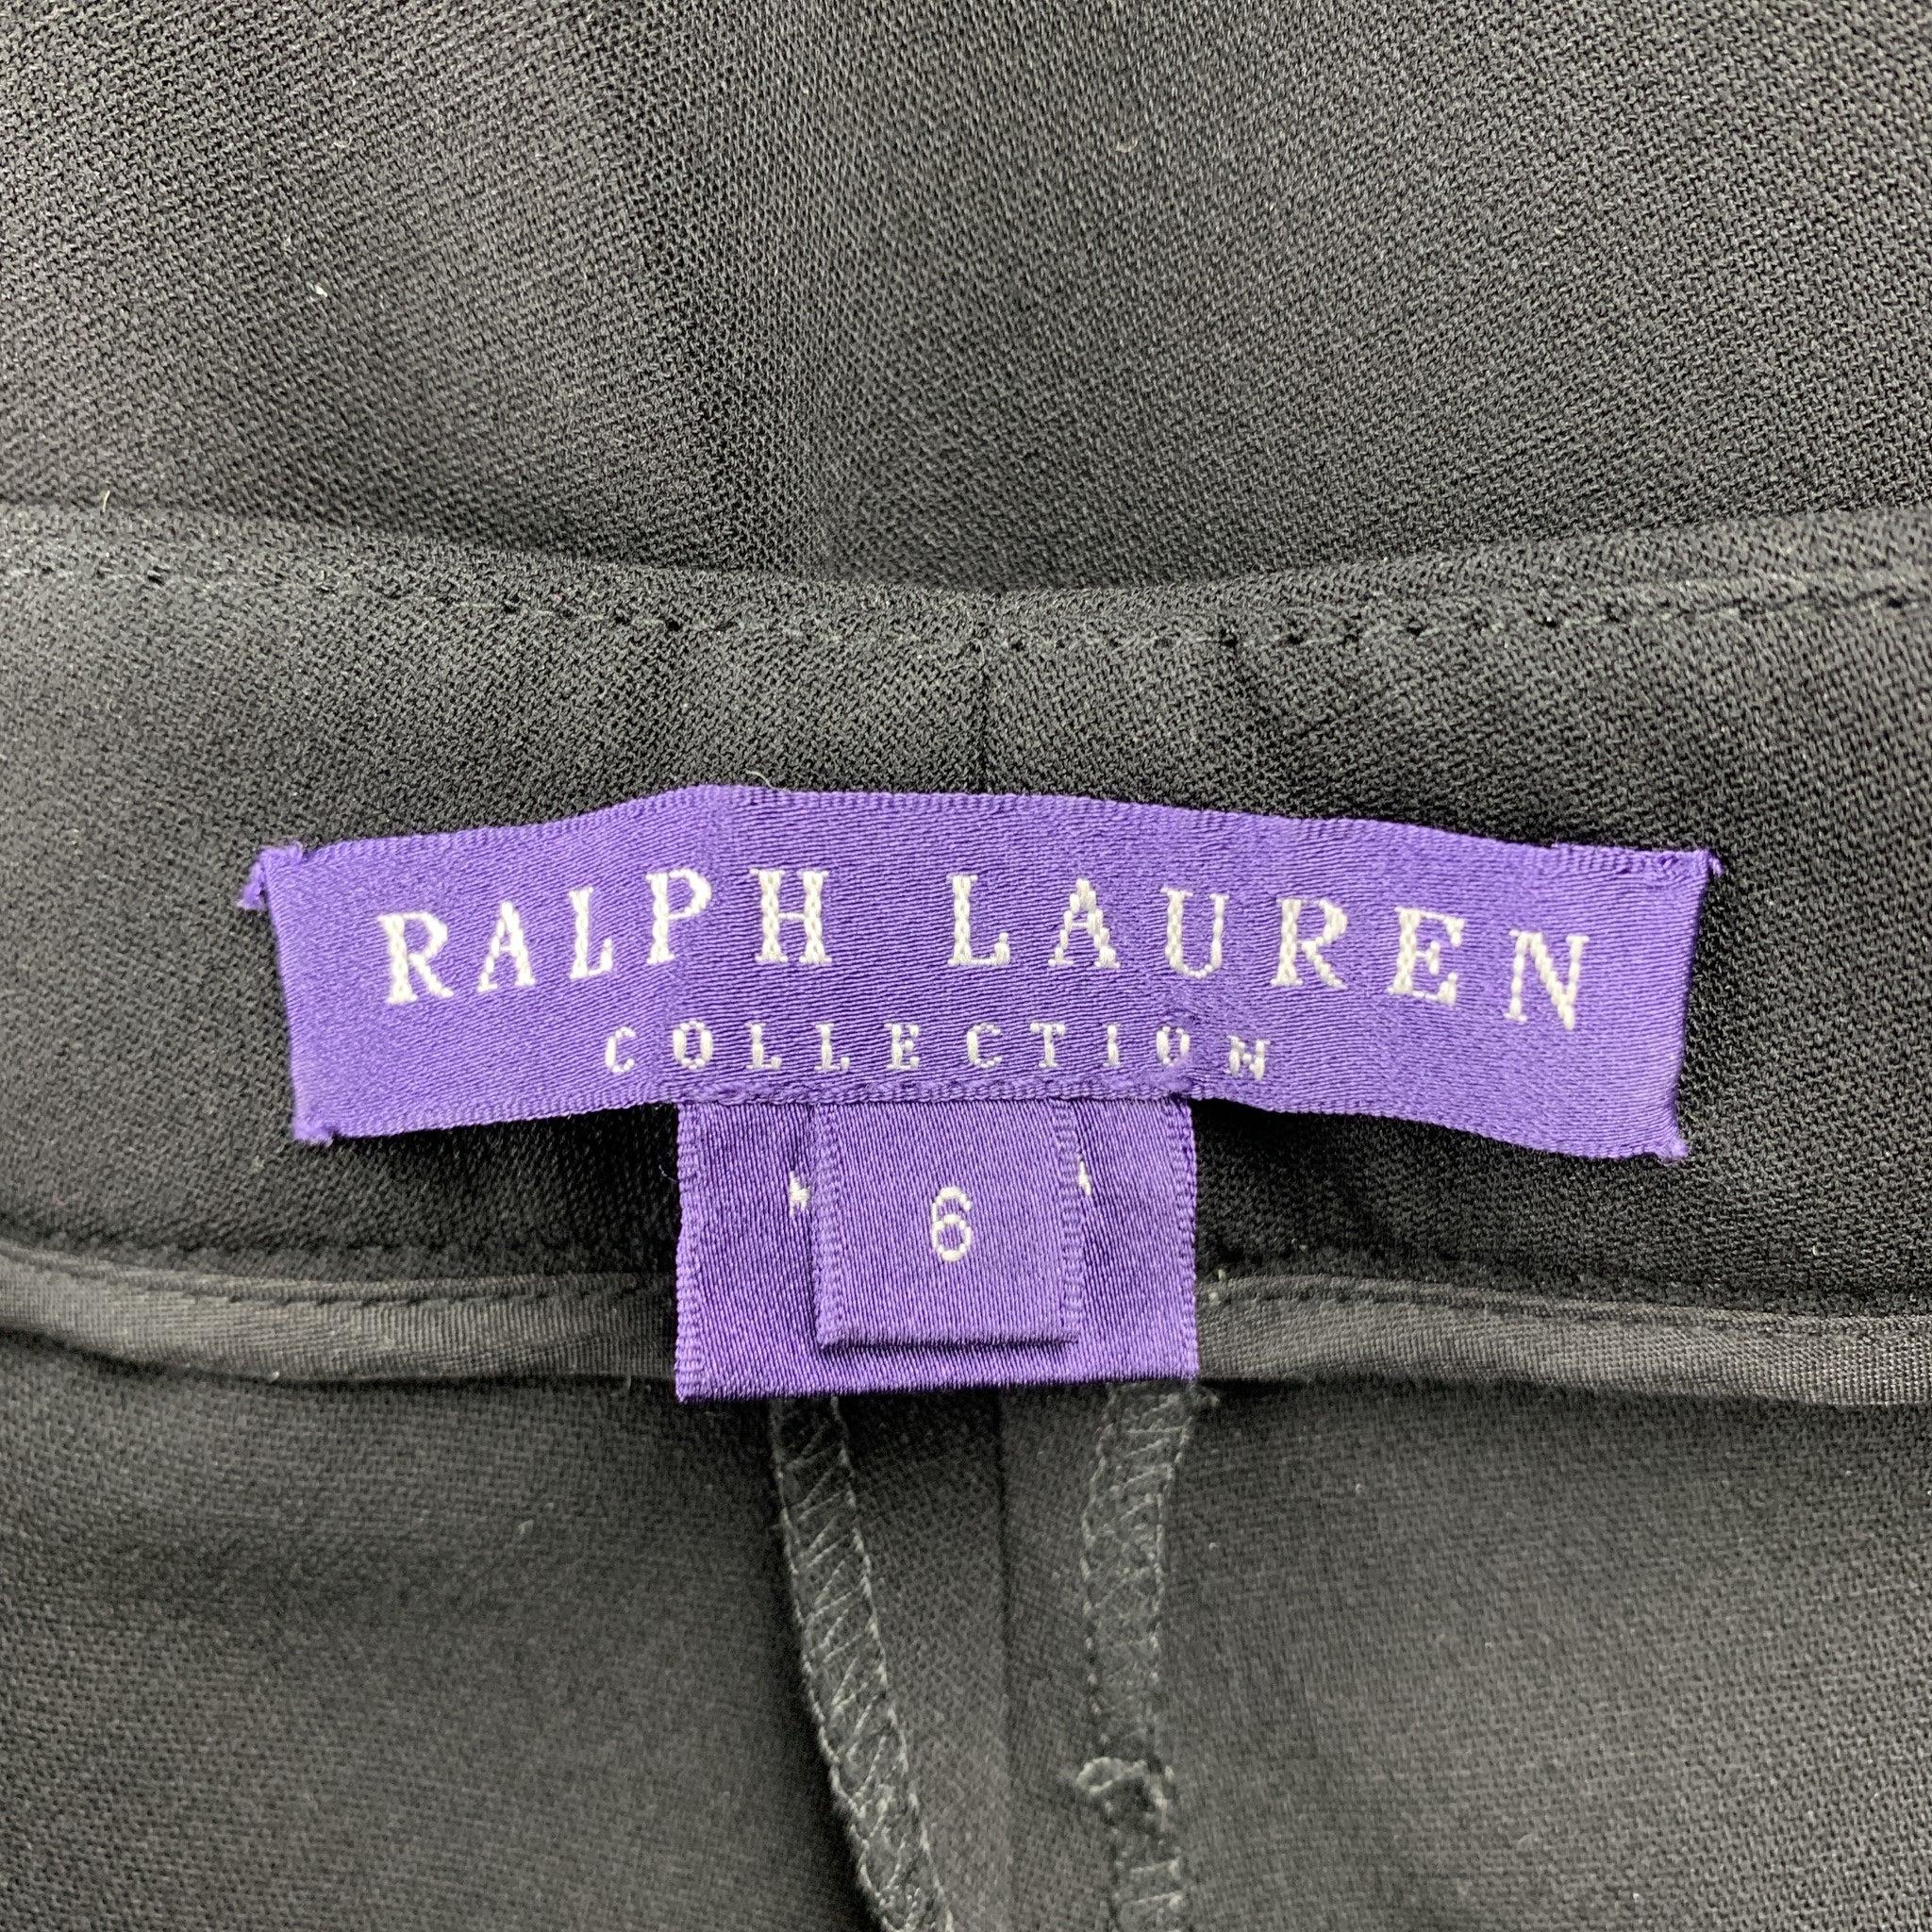 RALPH LAUREN COLLECTION Size 6 Black Straight Leg Dress Pants For Sale 1